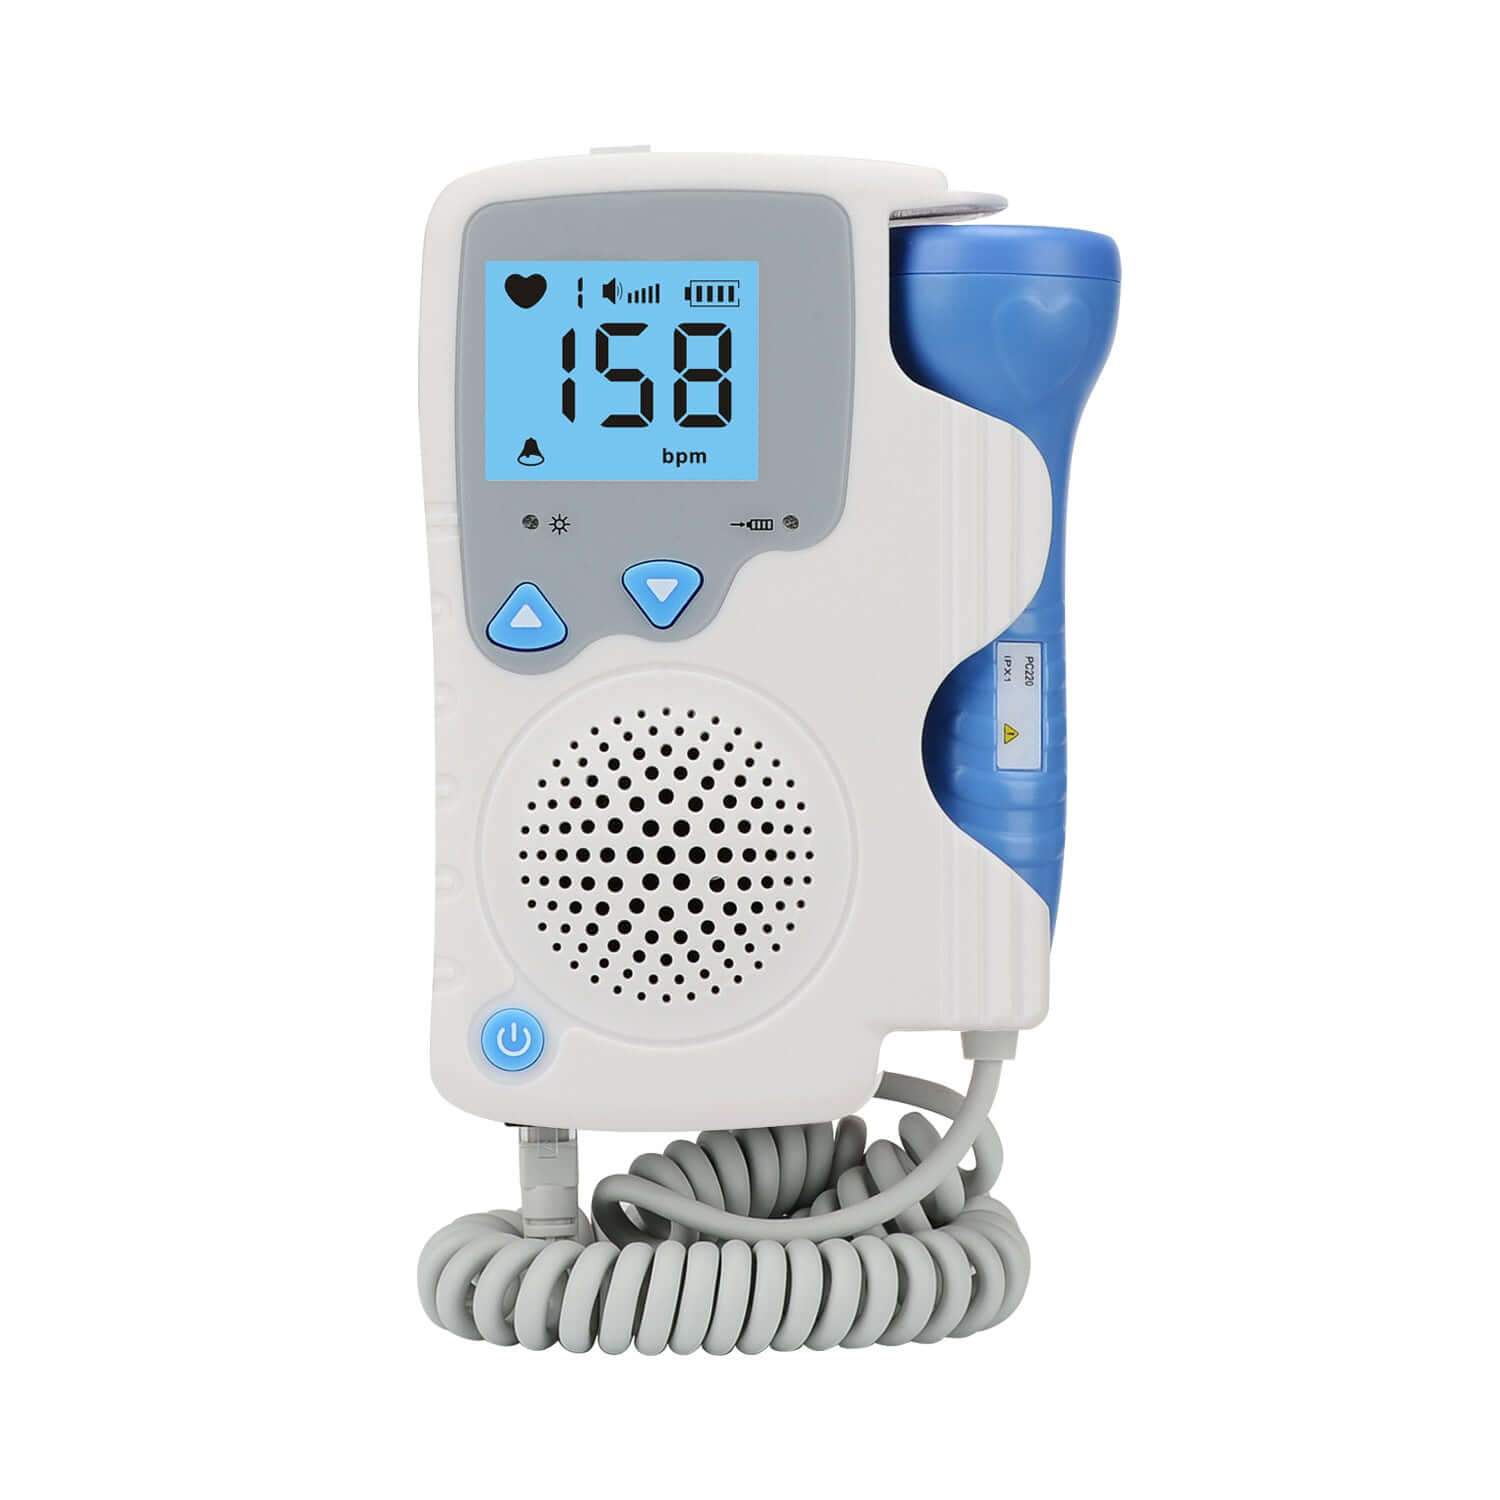 Fetal Doppler Baby Heart Rate Monitor Home Sonar Doppler Stethoscop - The Shopsite